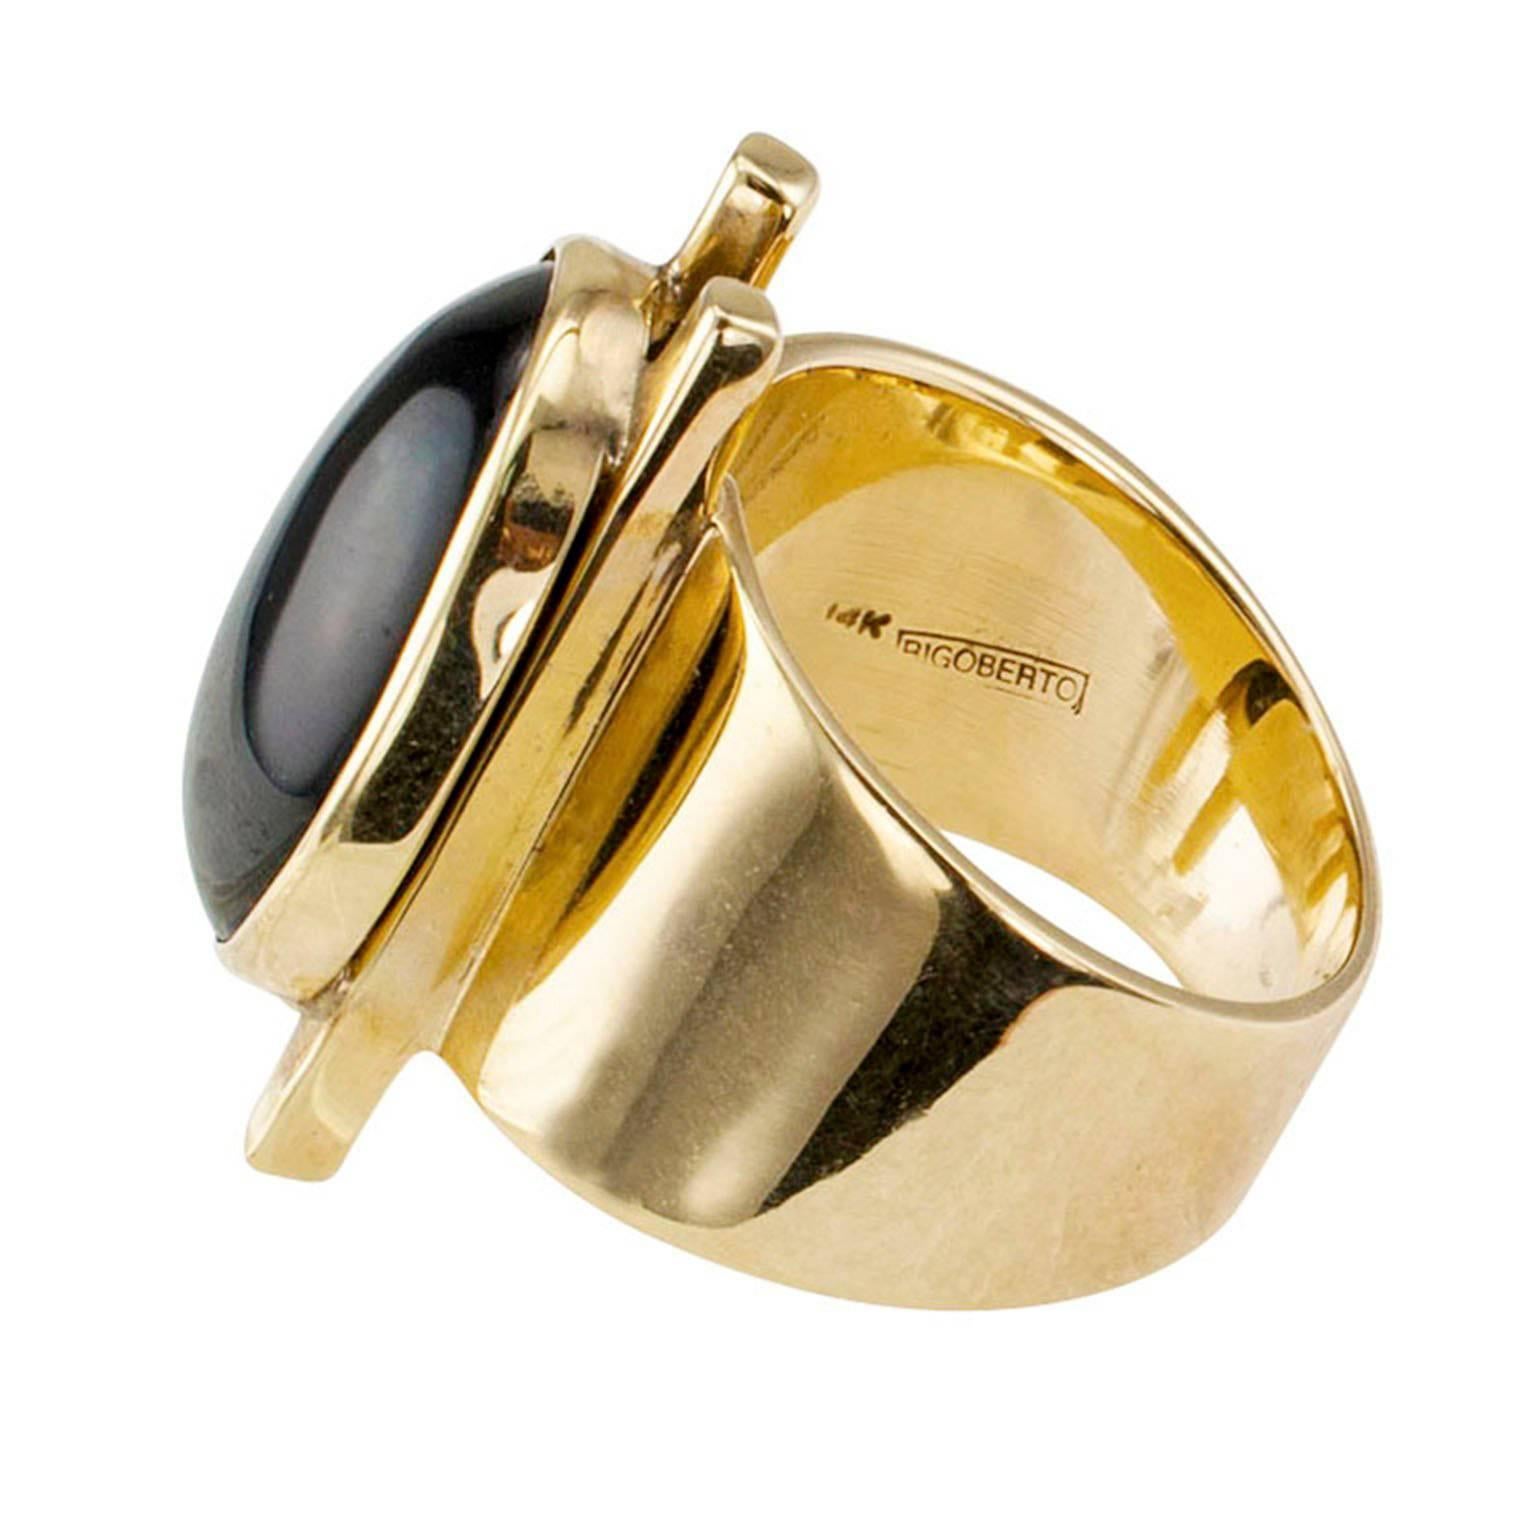 Modernist Rigoberto Onyx Gold Ring